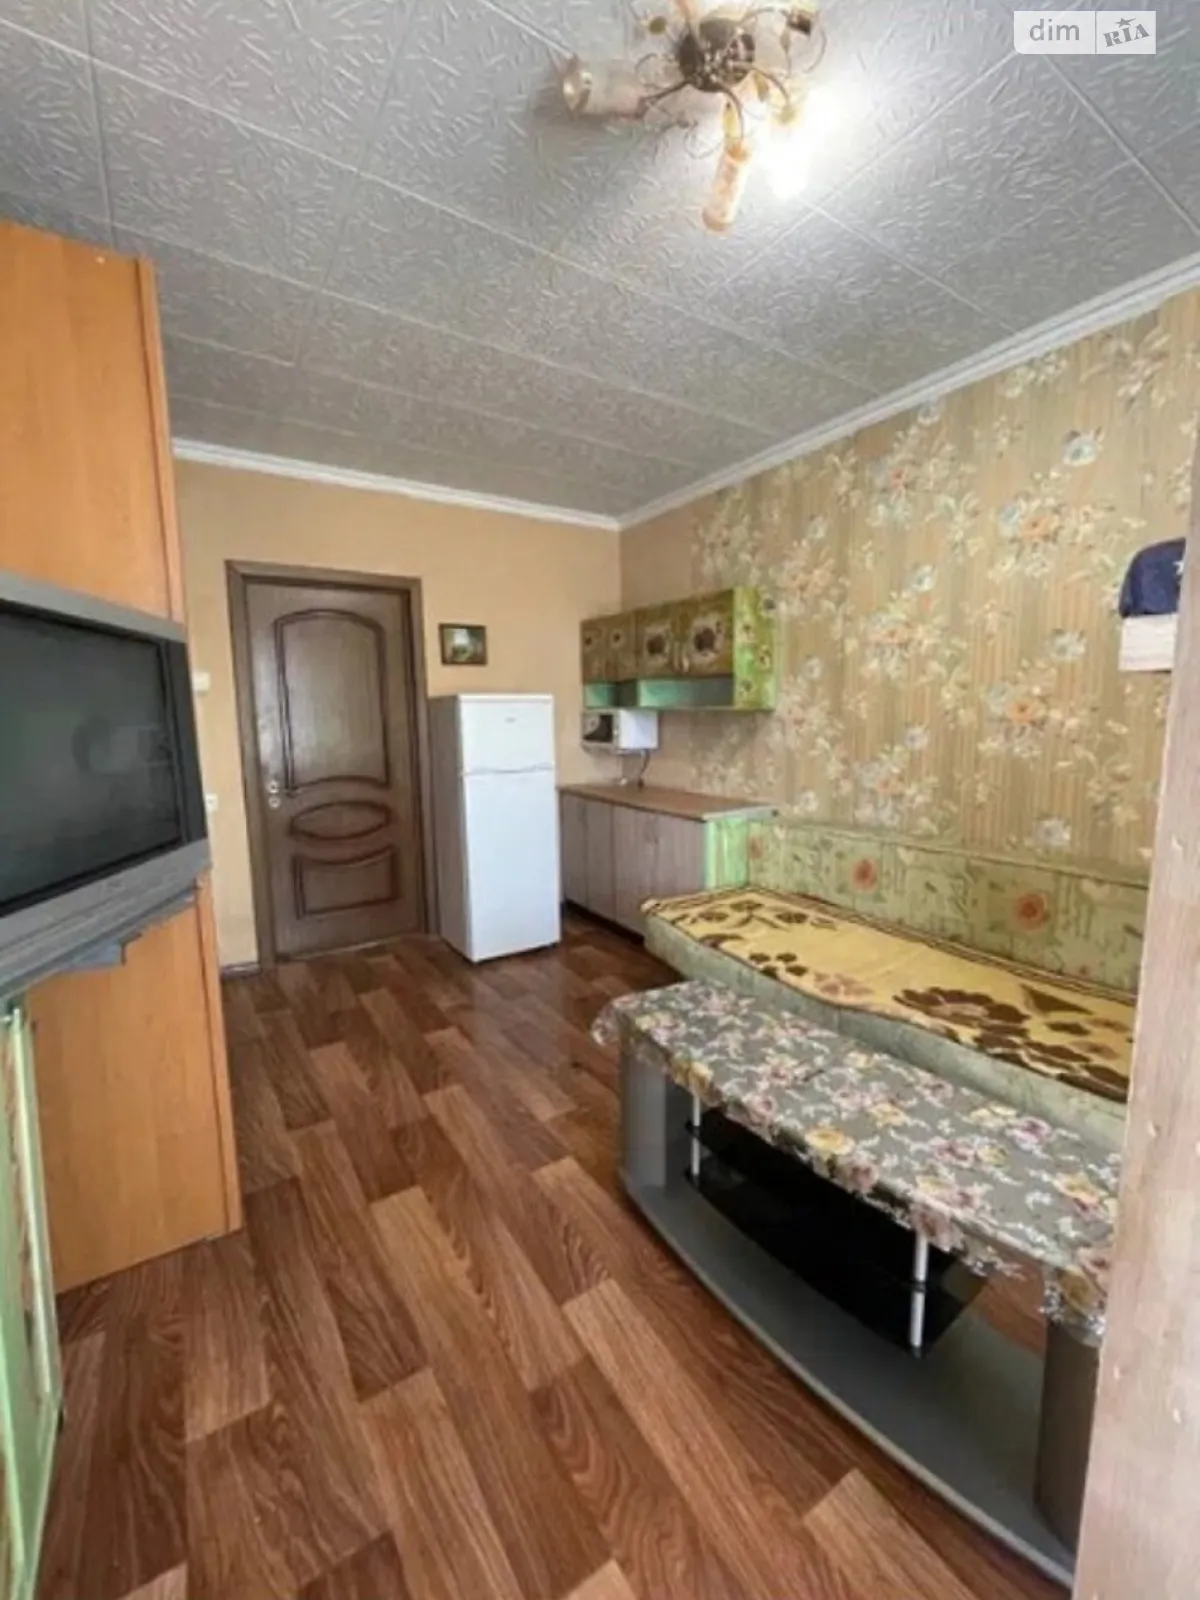 Продается комната 18 кв. м в Одессе, цена: 8500 $